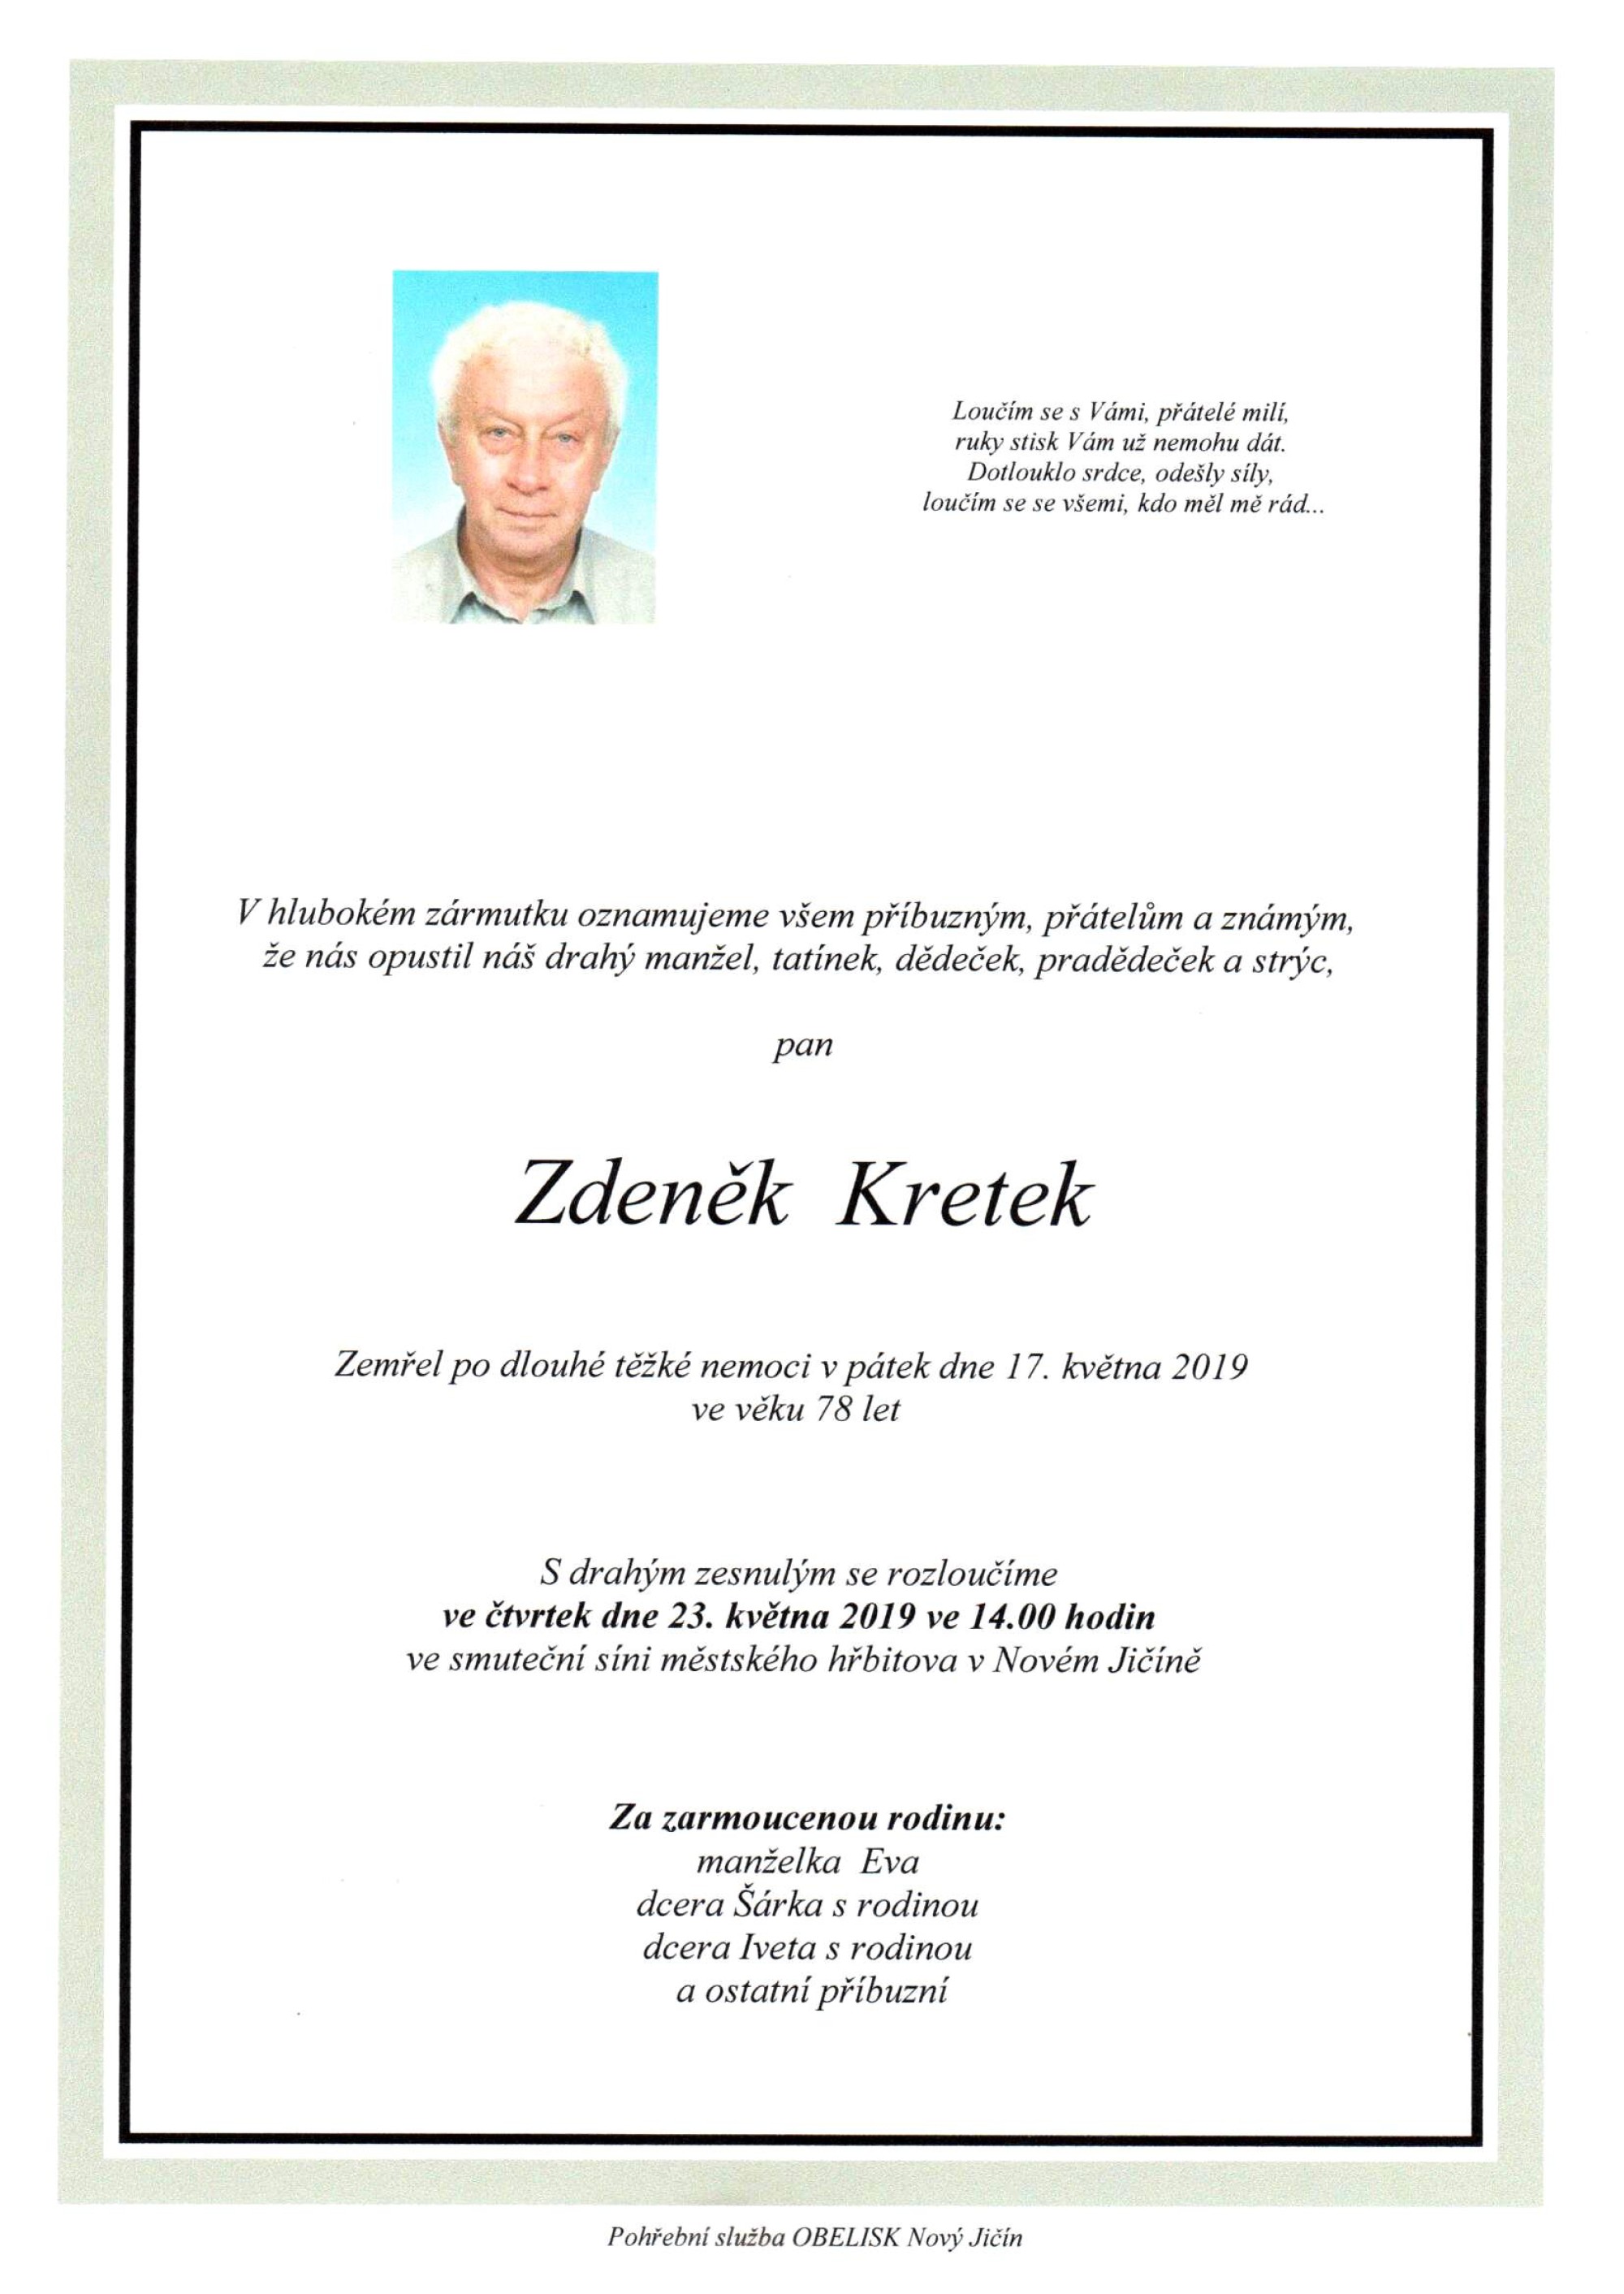 Zdeněk Kretek